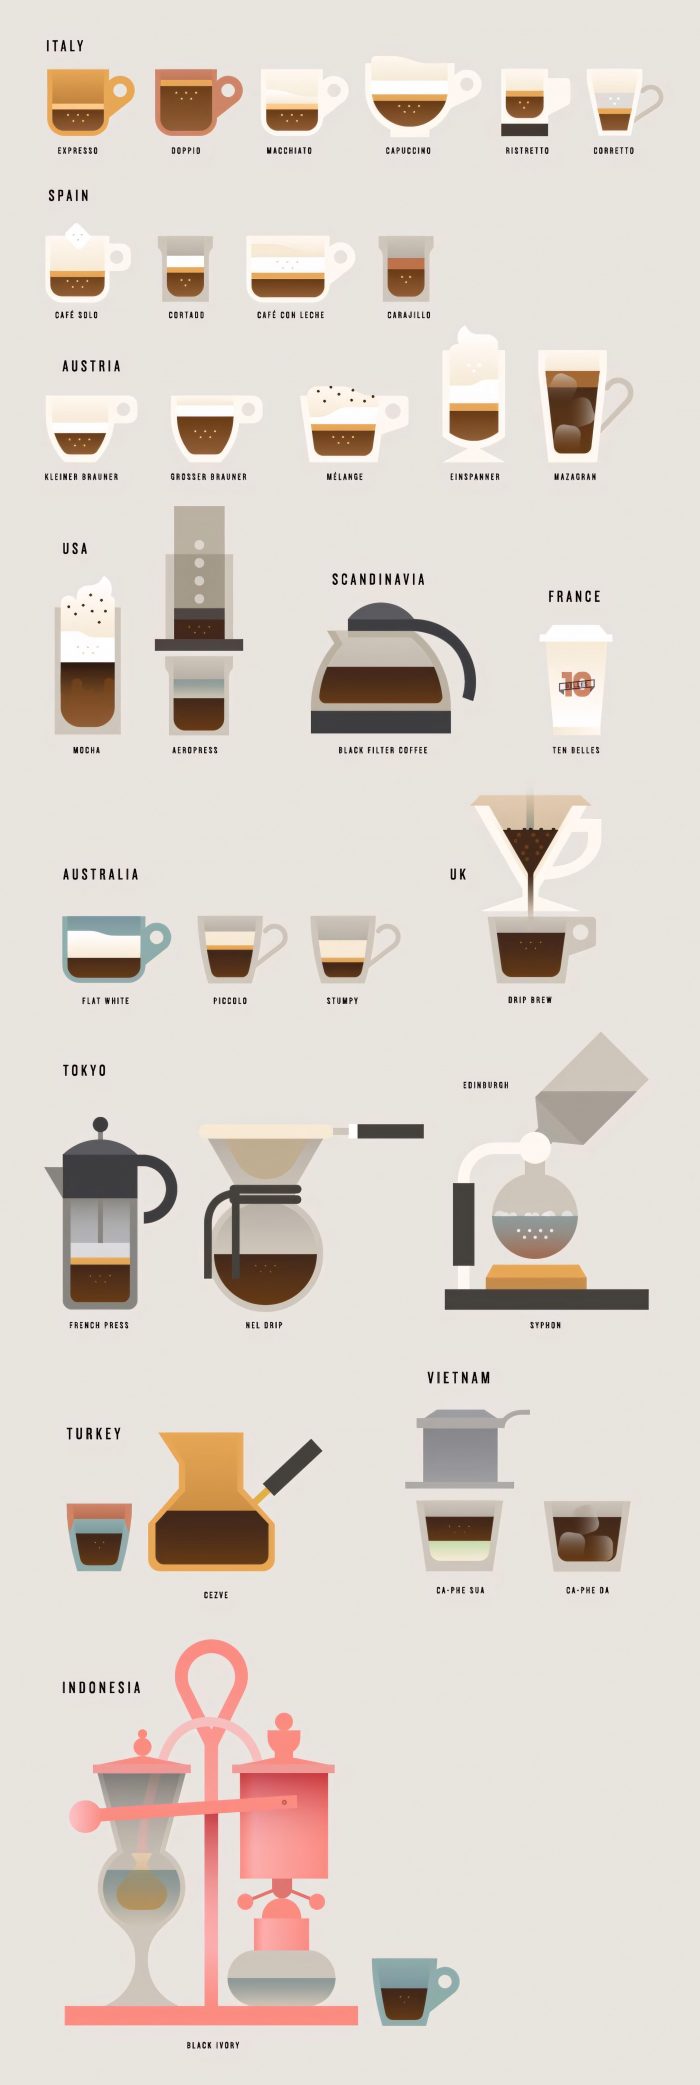 Delicious Ways To Enjoy Coffee Around The World